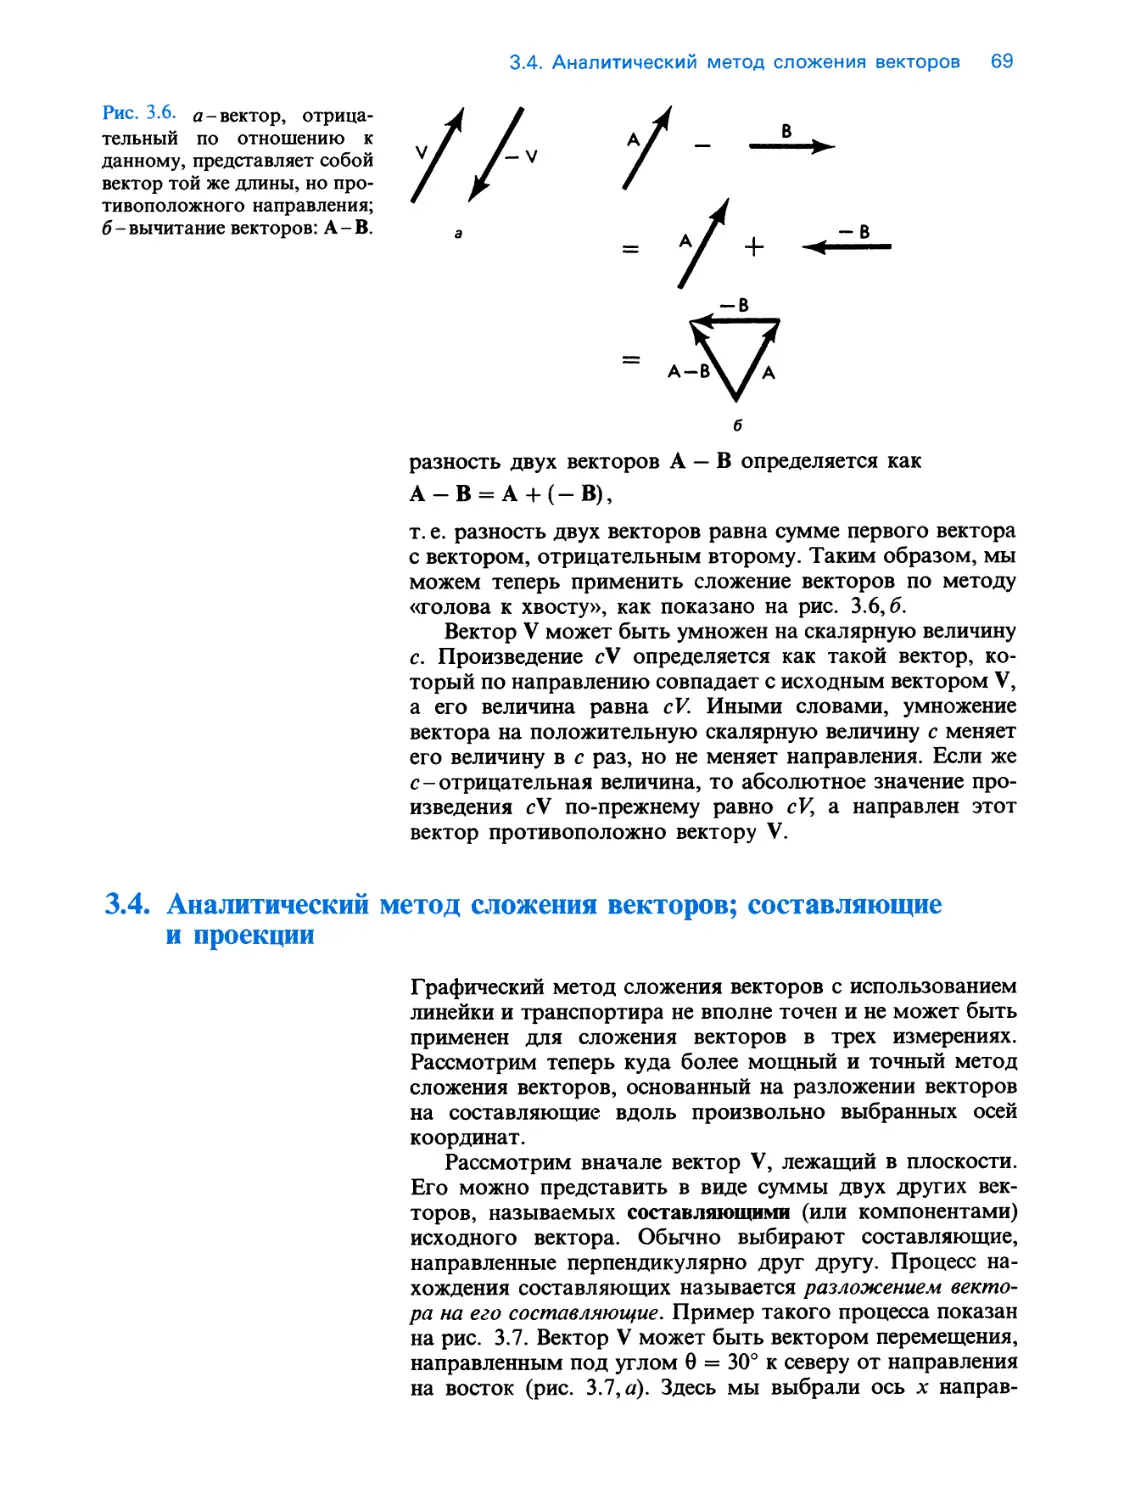 3.4. Аналитический метод сложения векторов; составляющие и проекции